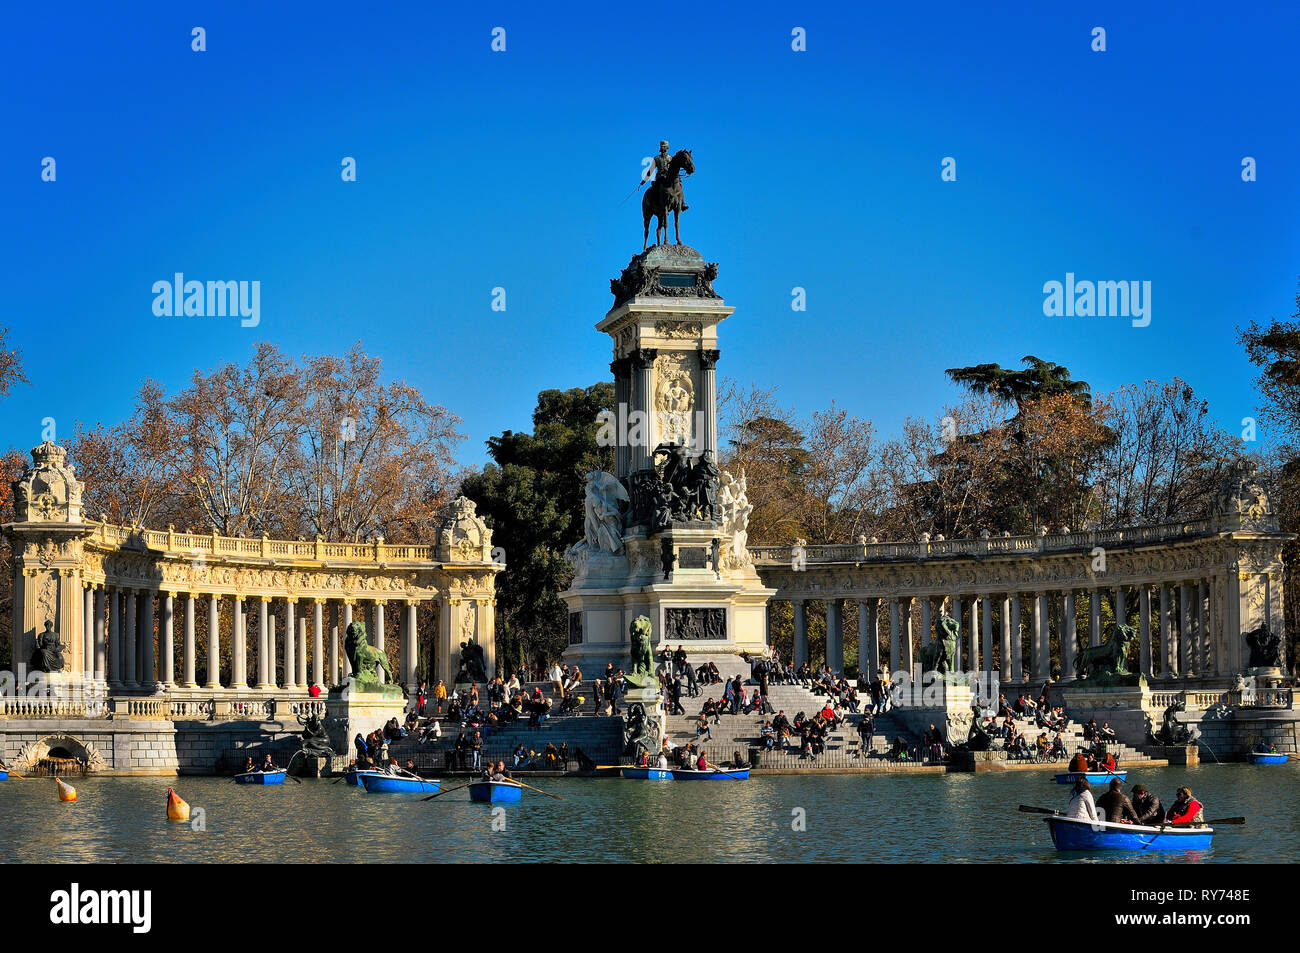 Monument à Alfonso XII à Buen Retiro Park contre le ciel bleu clair au cours de journée ensoleillée Banque D'Images